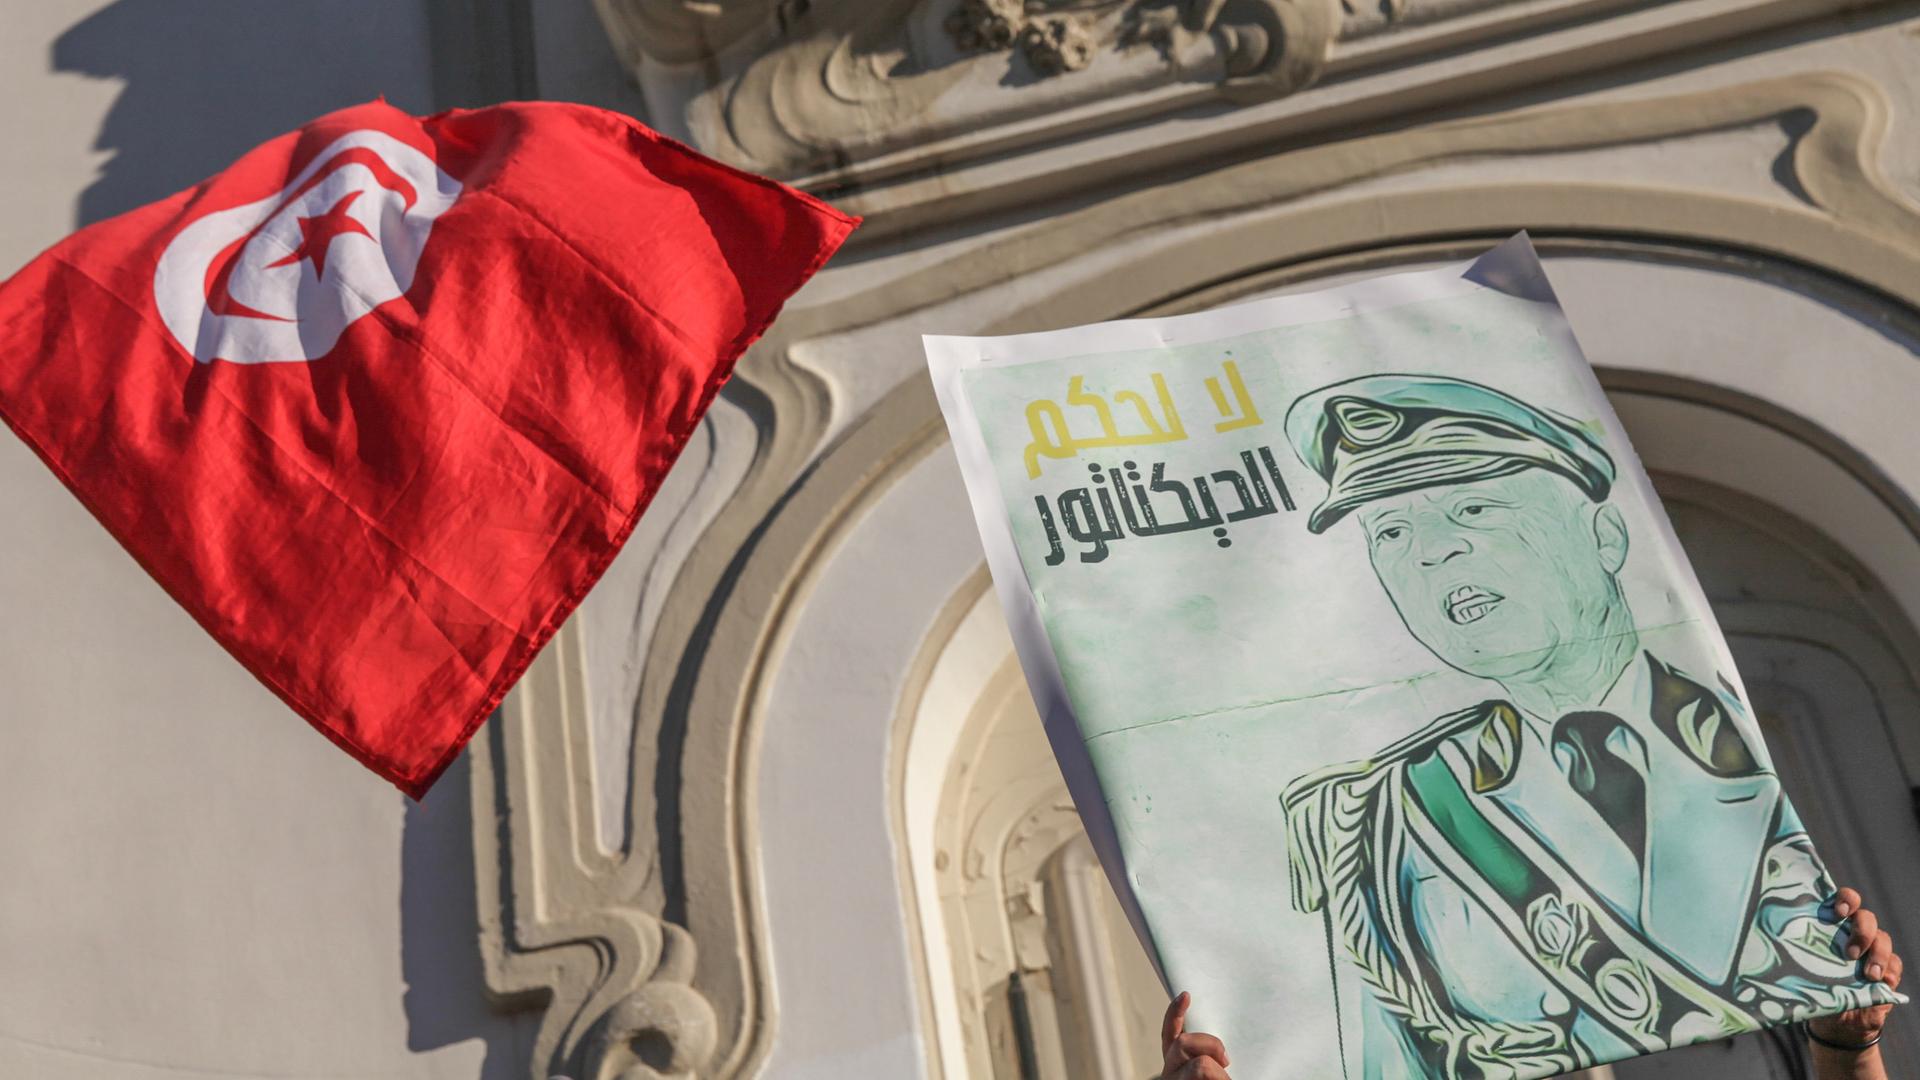 Eine Karikatur des tunesischen Präsidenten Kais Saied in Militäruniform mit der arabischen Aufschrift "Nein zur Herrschaft eines Diktators" neben der tunesischen Flagge. Während einer Demonstration von Anhängern tunesischer Oppositionsparteien und tunesischer zivilgesellschaftlicher Gruppen in Tunis am 22. Juli 2022, um gegen den tunesischen Präsidenten Kais Saied zu protestieren und zum Boykott des bevorstehenden Verfassungsreferendums am 25. Juli aufzurufen. 